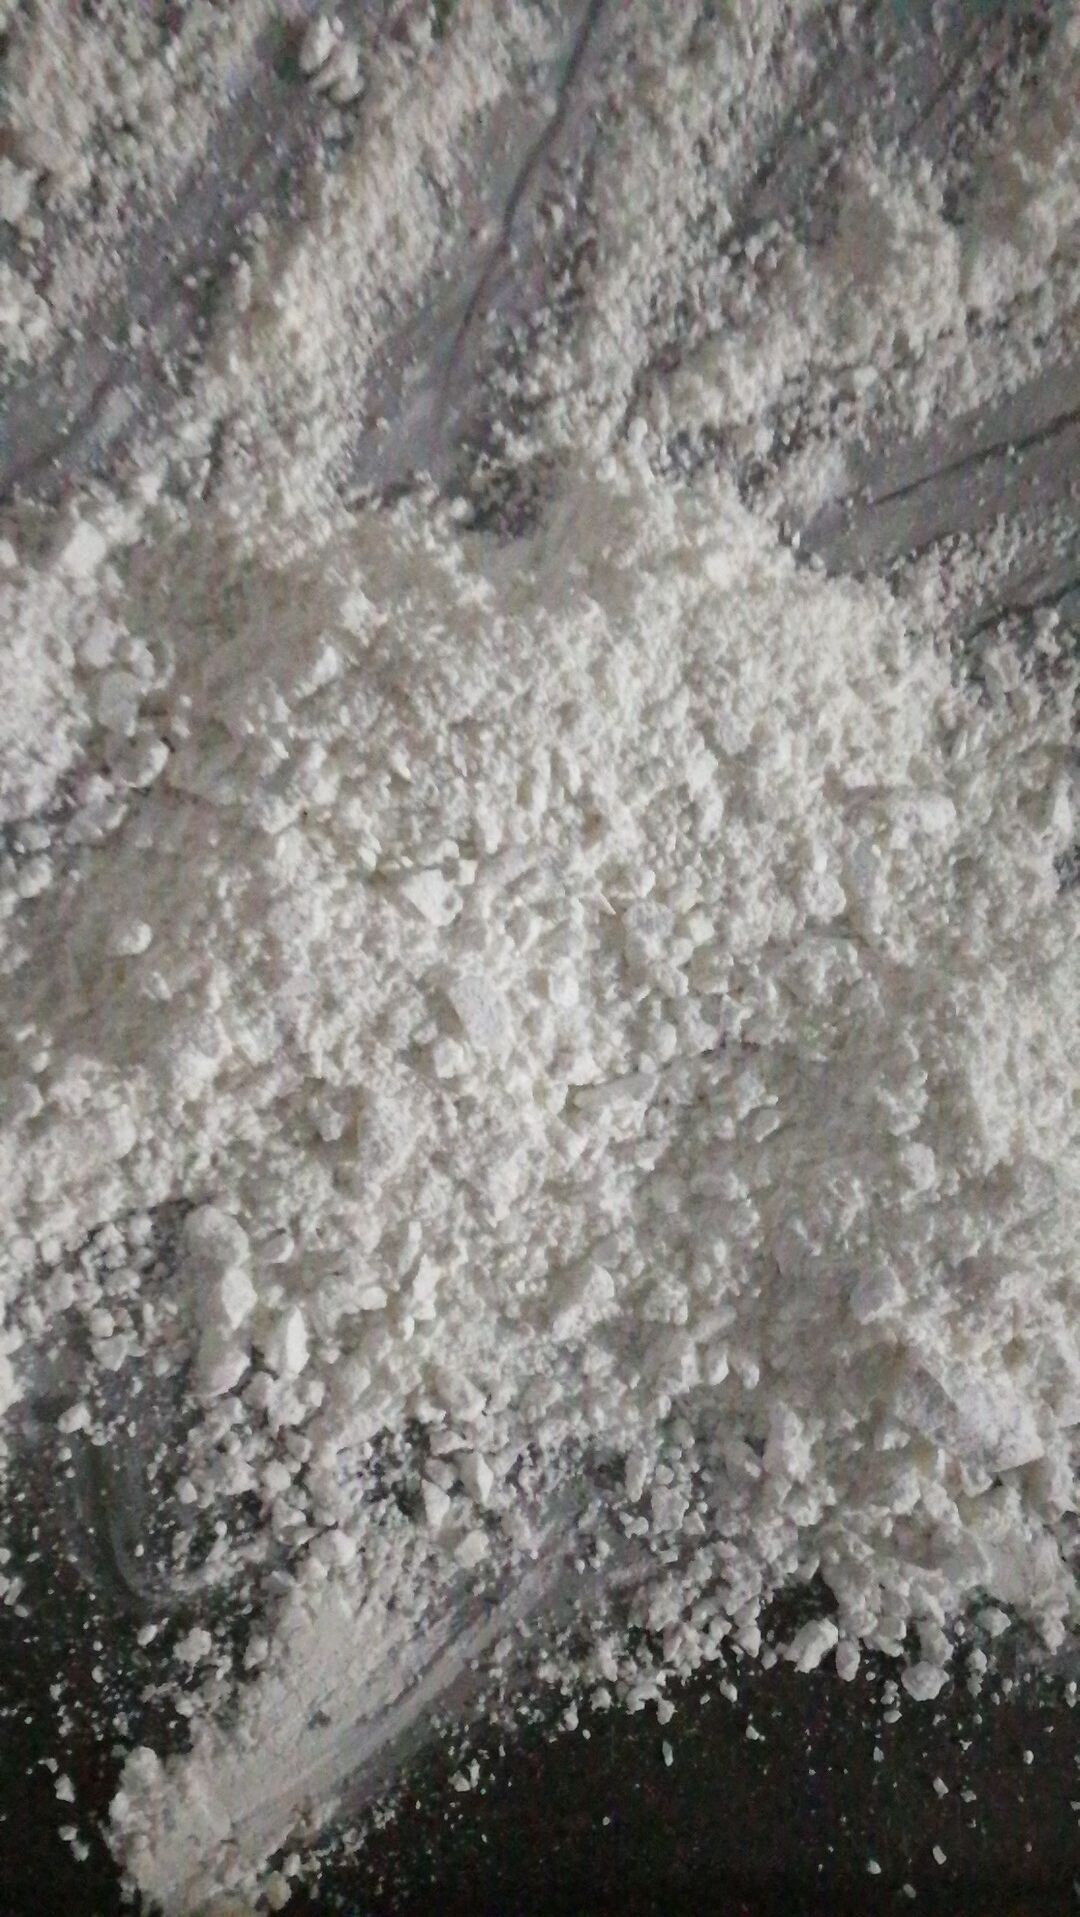 supply U47700 substitute powder keity@health222chem.com